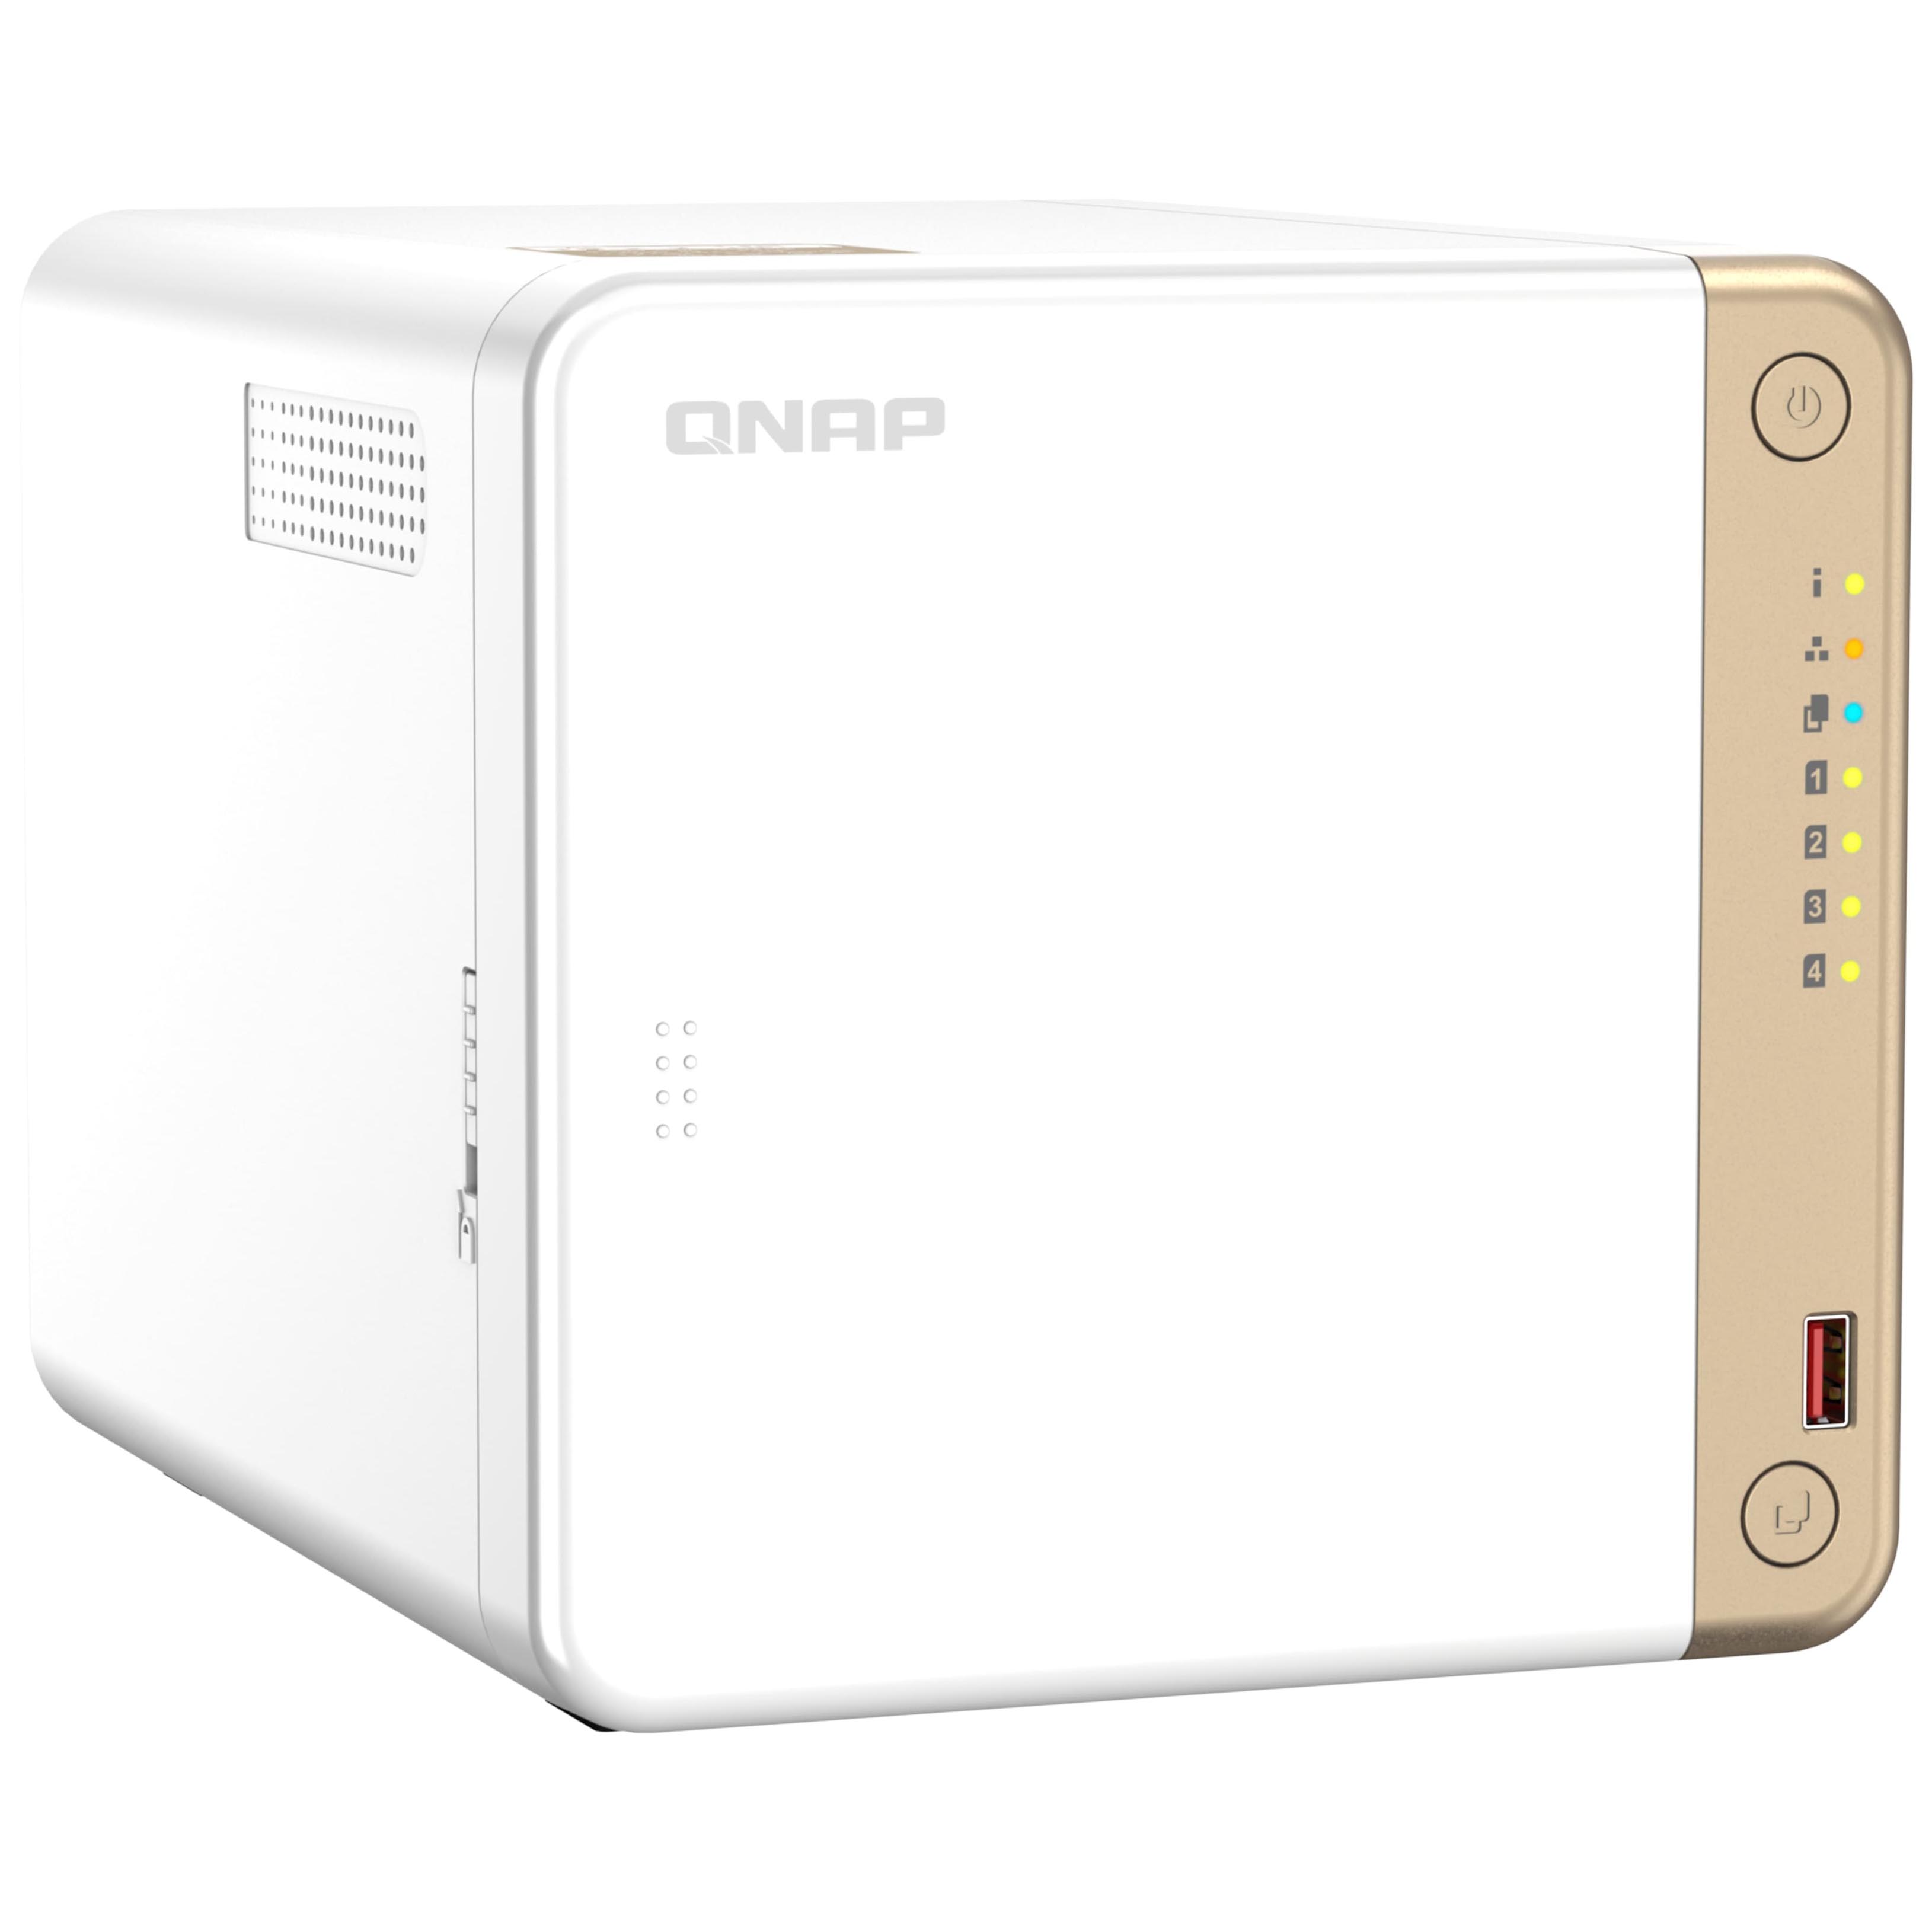 Сетевое хранилище QNAP TS-462 Nas, 4 отсека, без дисков, белый сетевое хранилище nas qnap ts 1677x 1700 64g 16 bay настольный ryzen7 1700